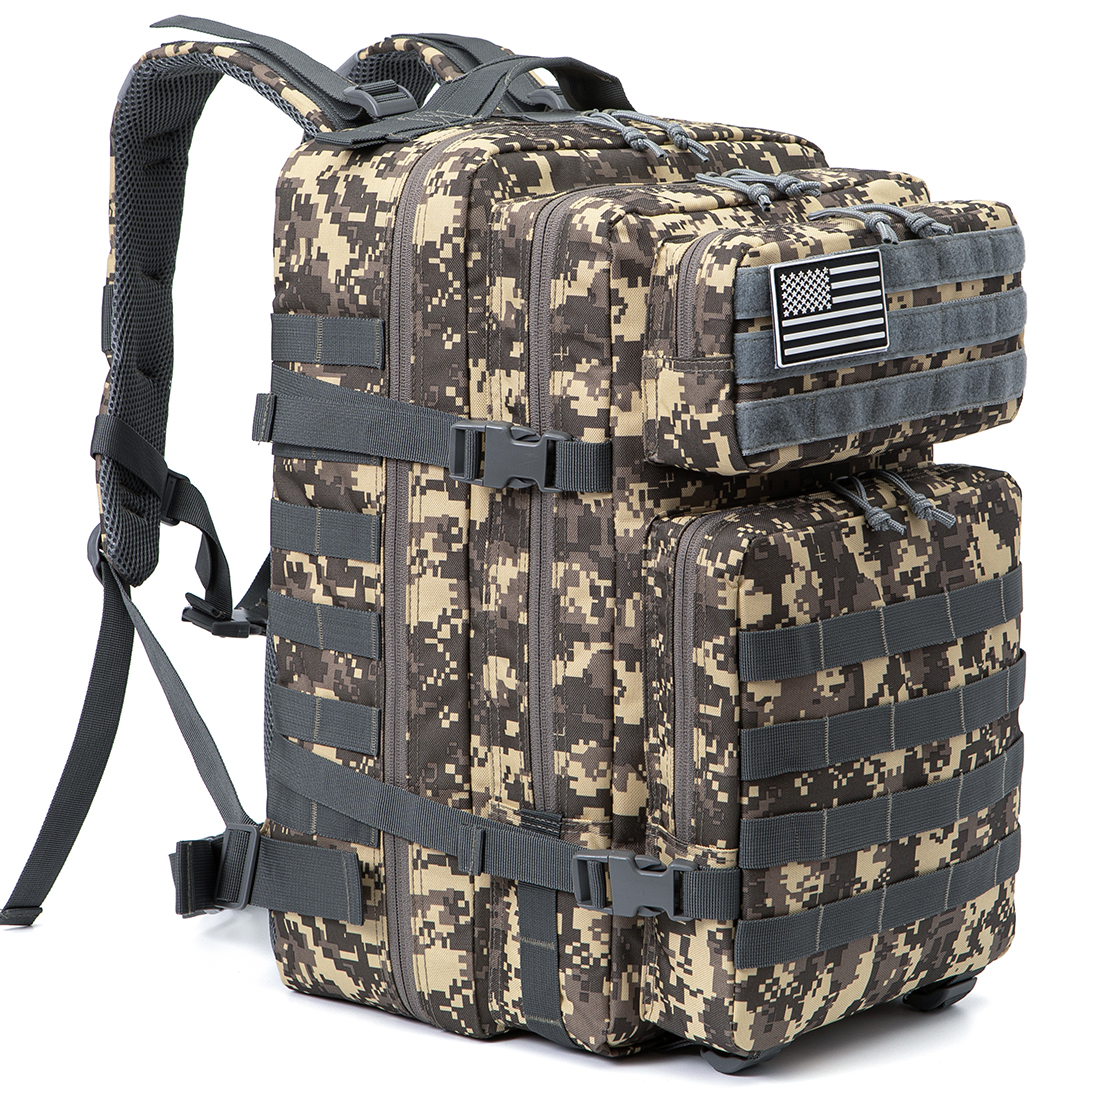 QT&QY Military Tactical Backpacks For Men Molle Daypack 35L/45L Large 3 Day  Bug Out Bag Hiking Rucksack With Bottle Holder 45l 1.0 Black